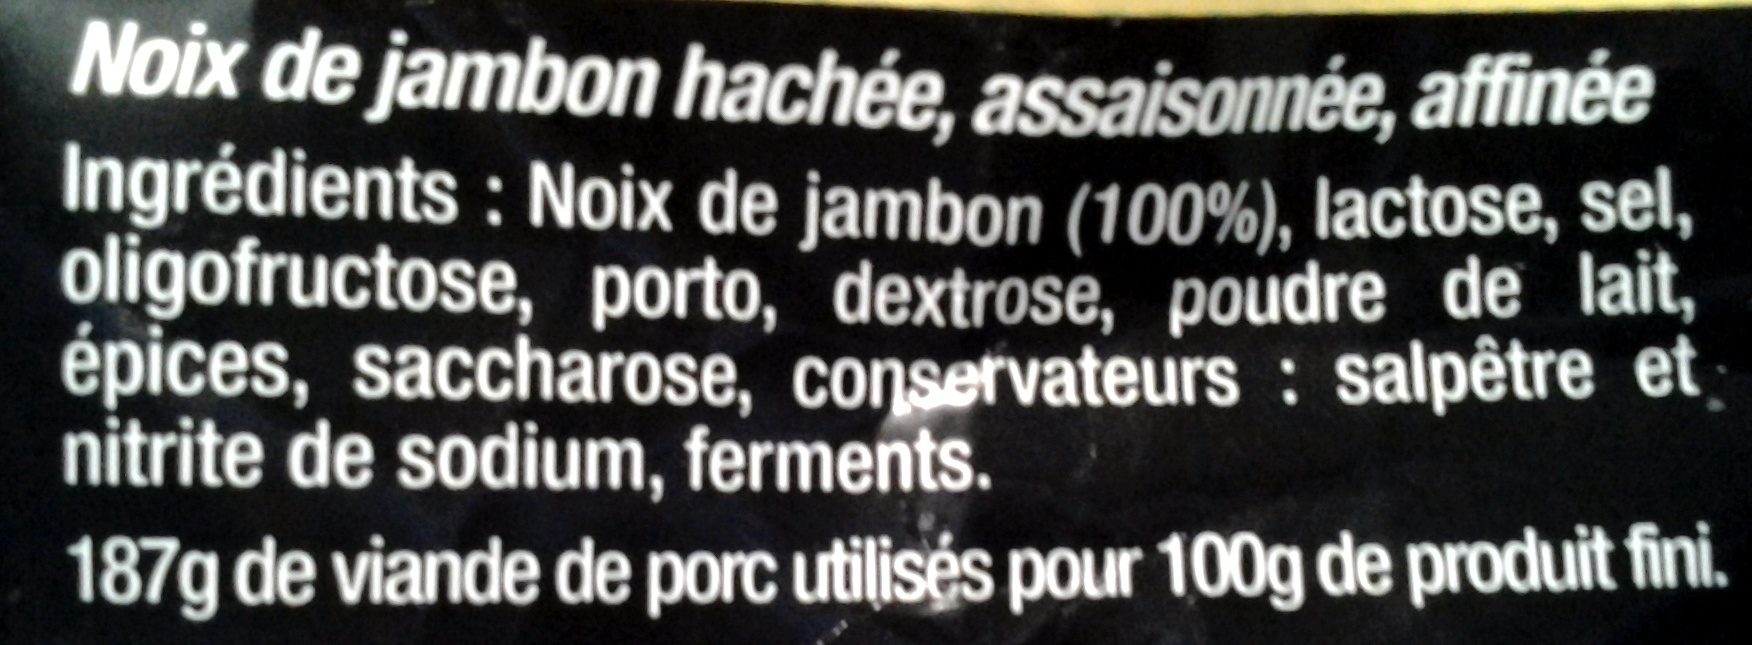 Noix de Jambon - Ingredients - fr